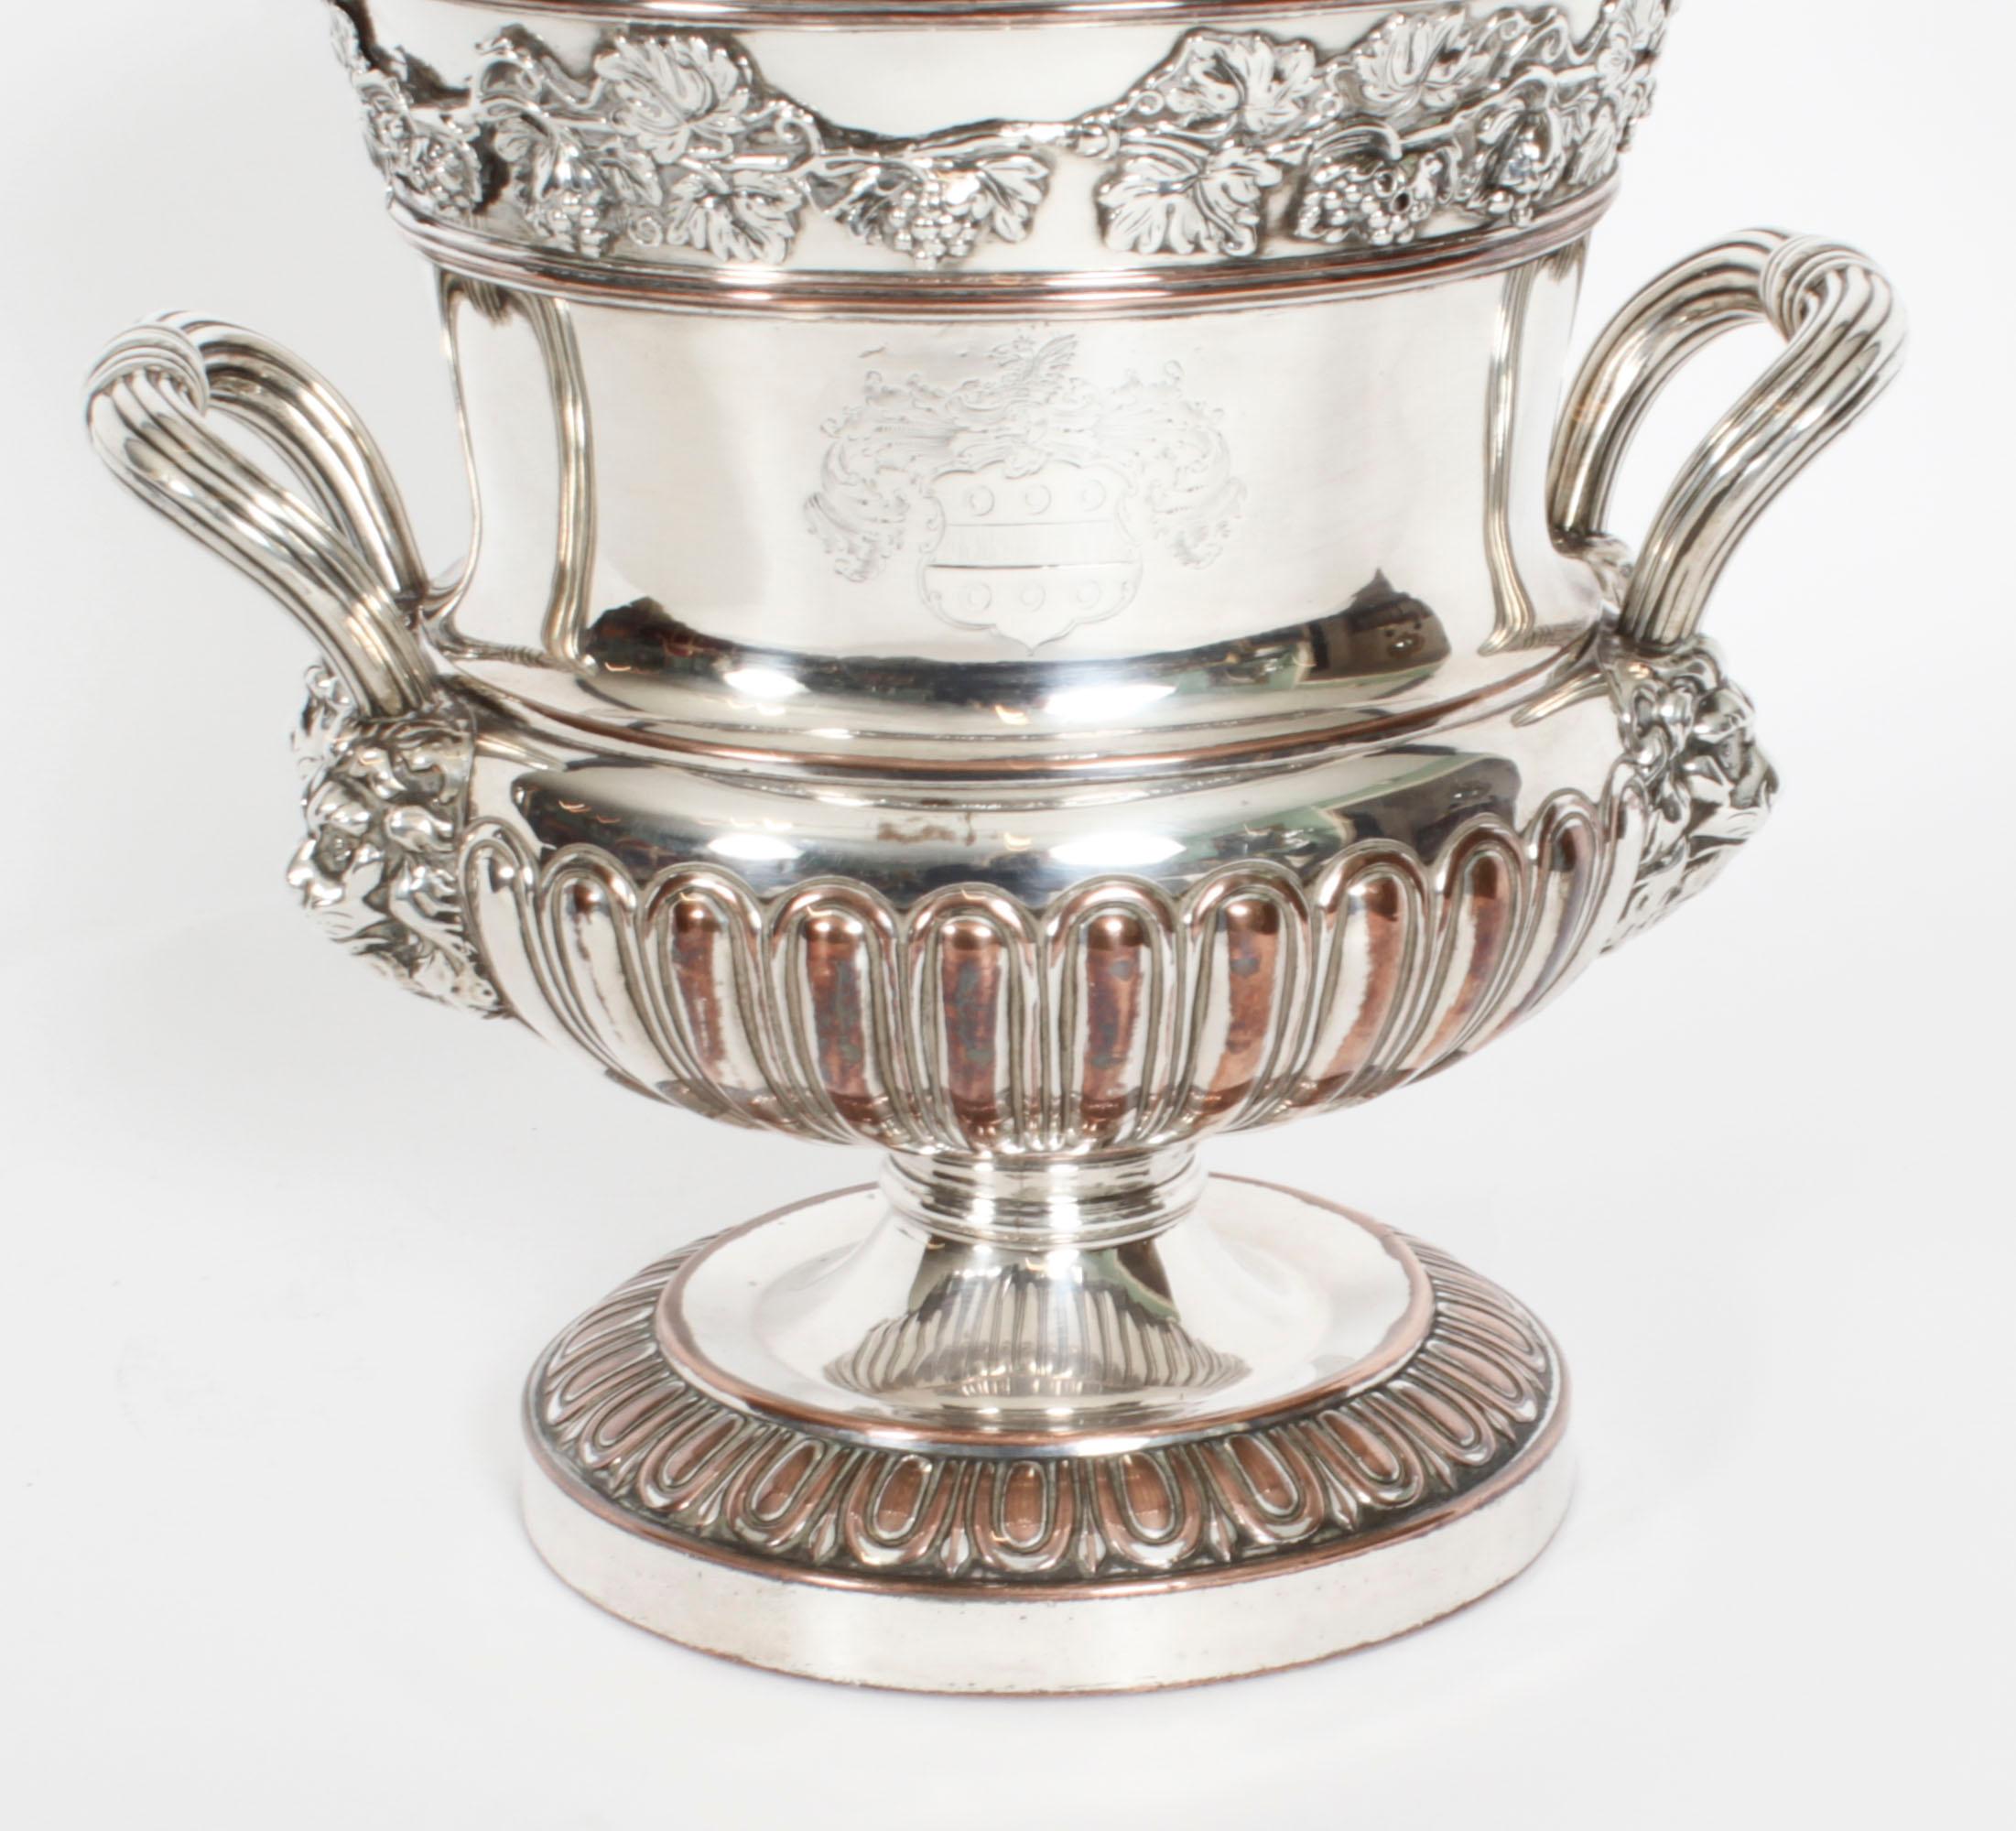 Dies ist eine wunderbare und seltene antike englische Old Sheffield Plate, Silber auf Kupfer, Regency Weinkühler von Campana Form, CIRCA 1820 in Datum.
 
Der Kühler hat einen gerippten, zweihändigen, maskenkopfförmigen Urnenkorpus mit kanneliertem